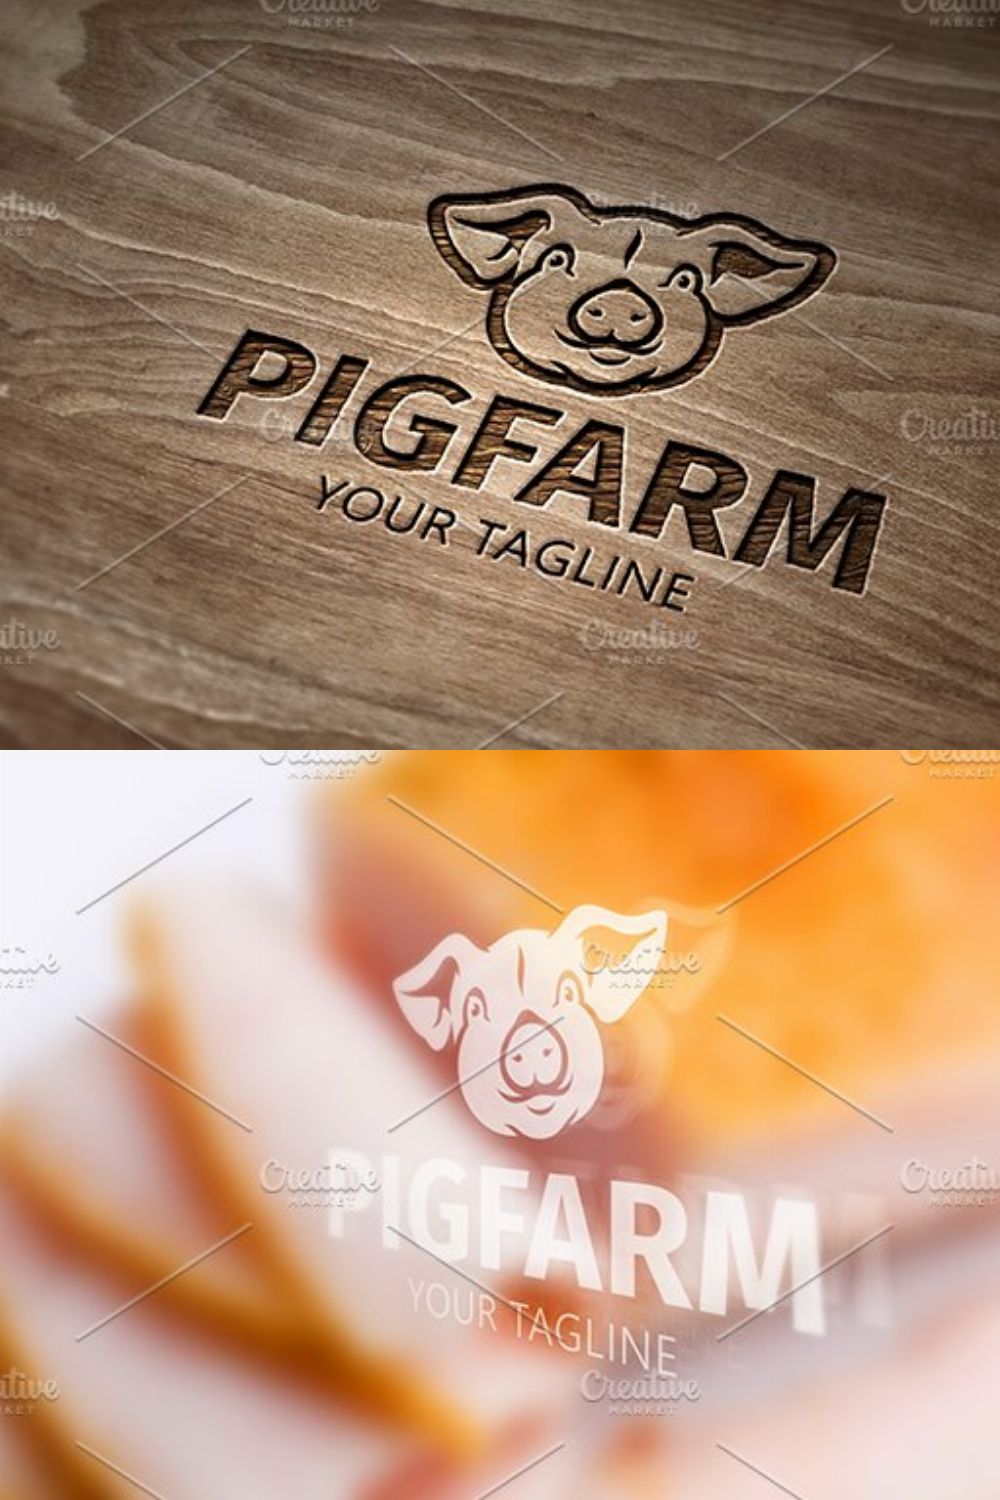 Pig Farm pinterest preview image.